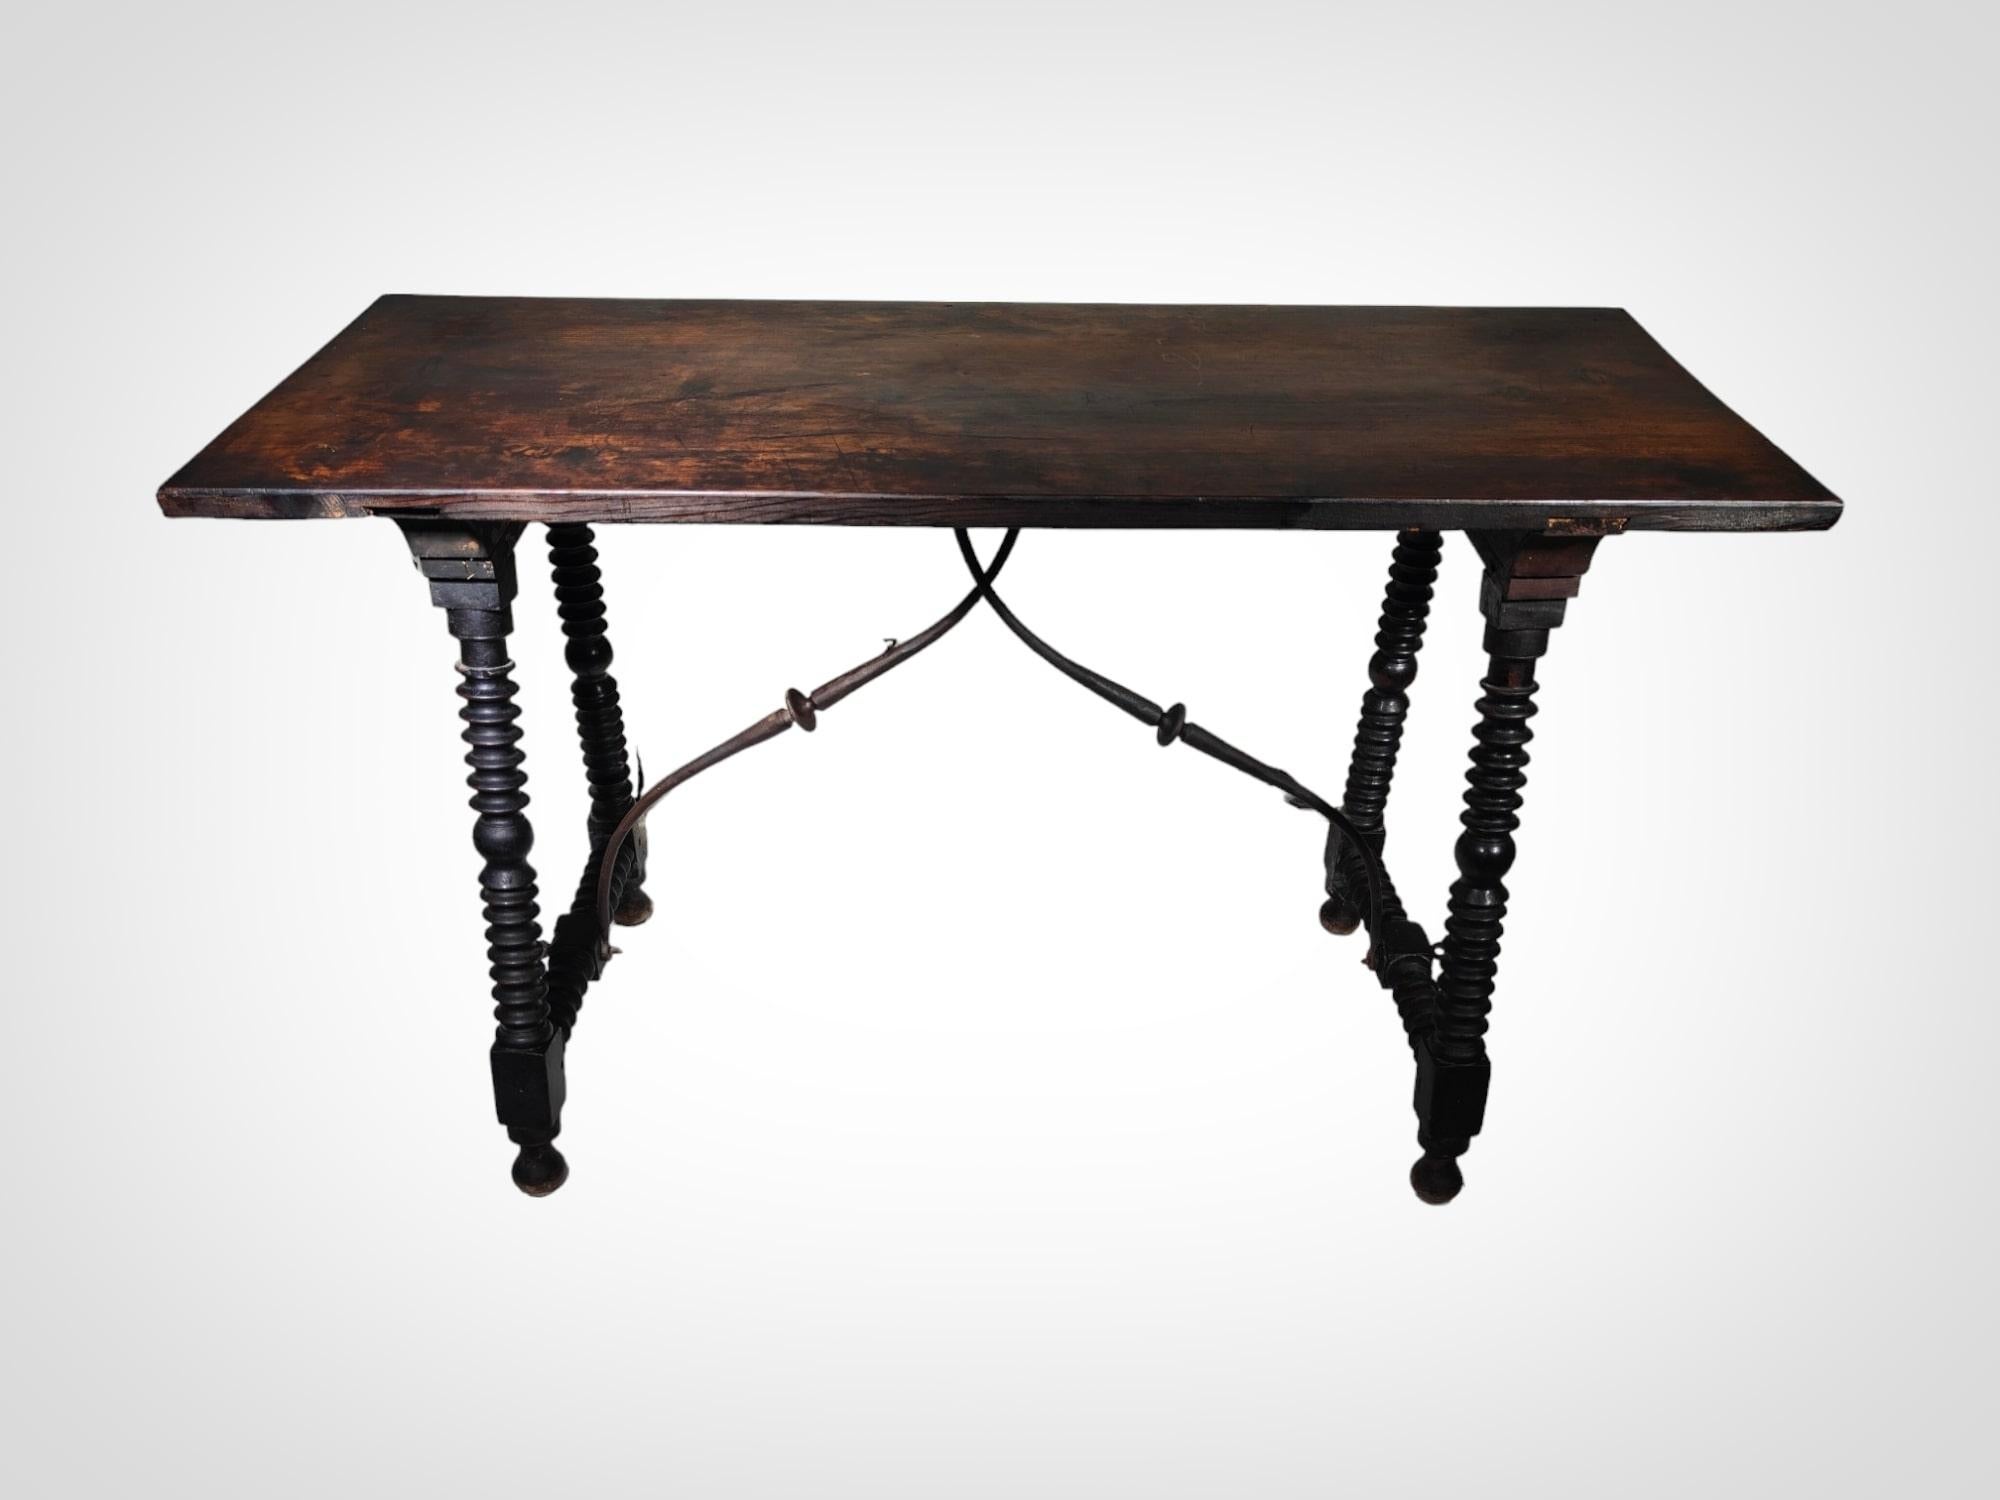 Tauchen Sie ein in die zeitlose Eleganz dieses spanischen Tisches aus dem 17. Jahrhundert, ein wahres Meisterwerk, das die Handwerkskunst dieser Epoche widerspiegelt. Mit seinen gedrechselten Beinen und den kunstvoll geschmiedeten Eisenbeschlägen